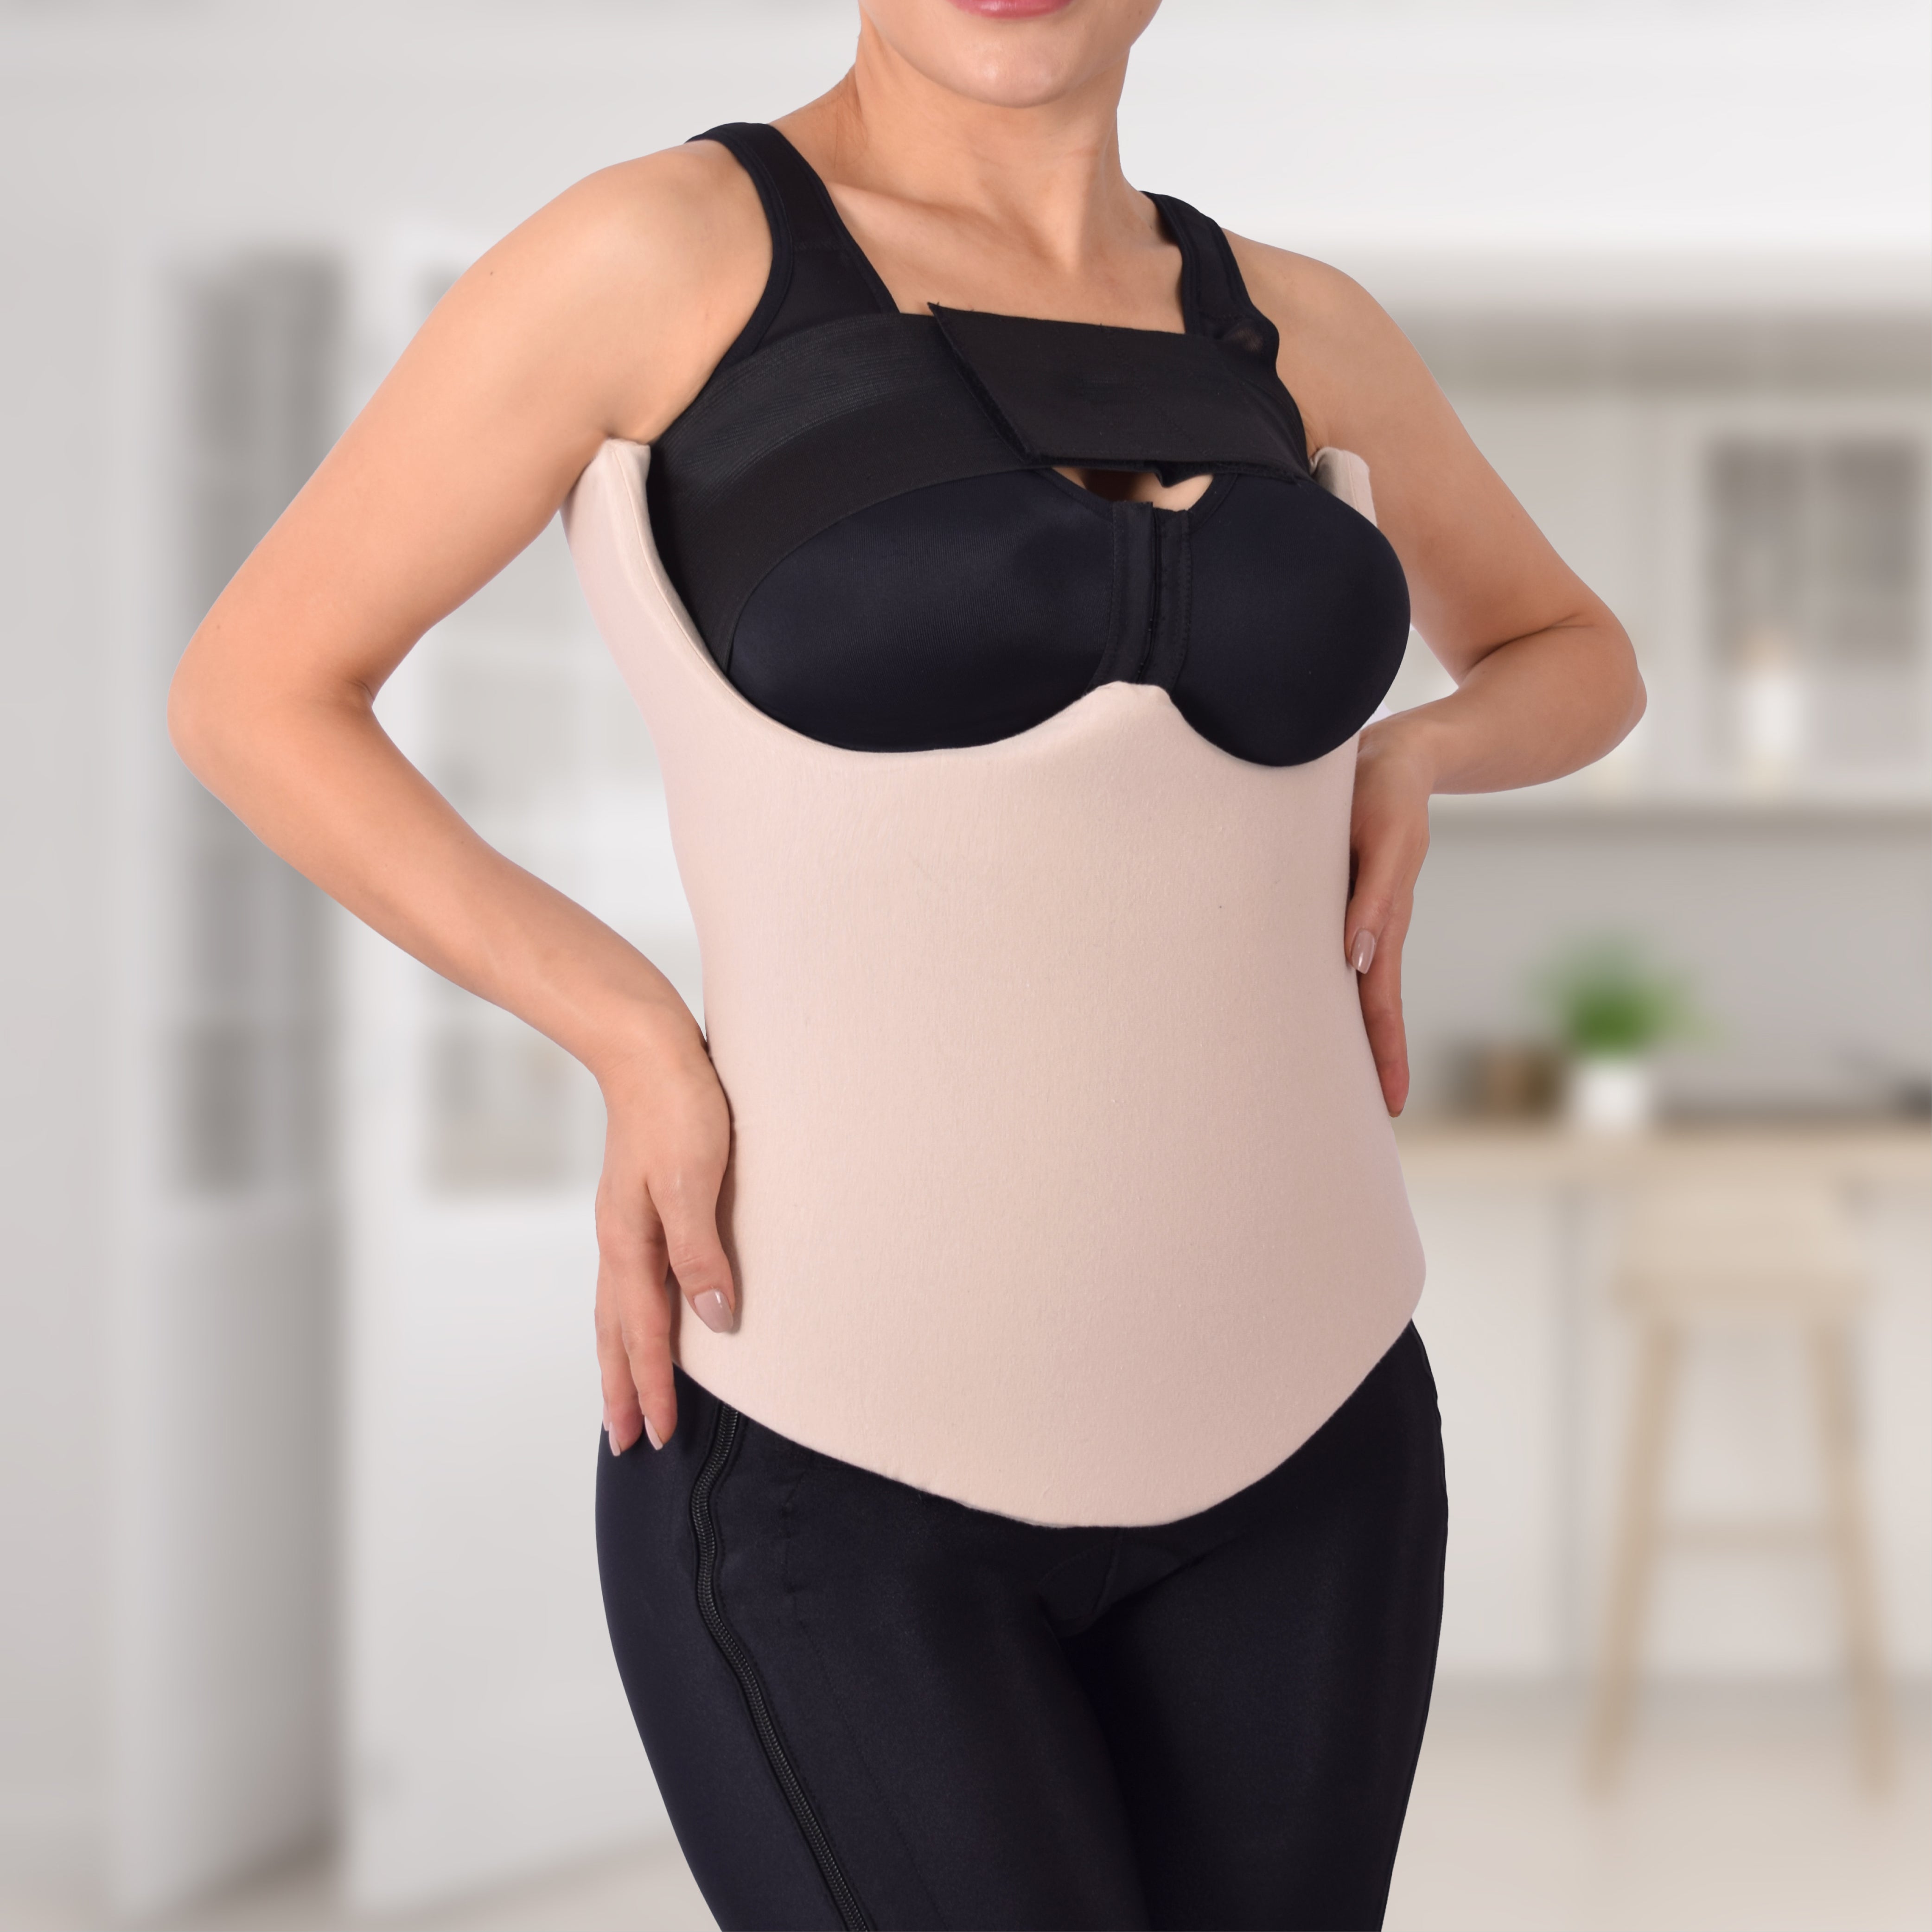 Women’s Liposuction Vest by Dr. Shape